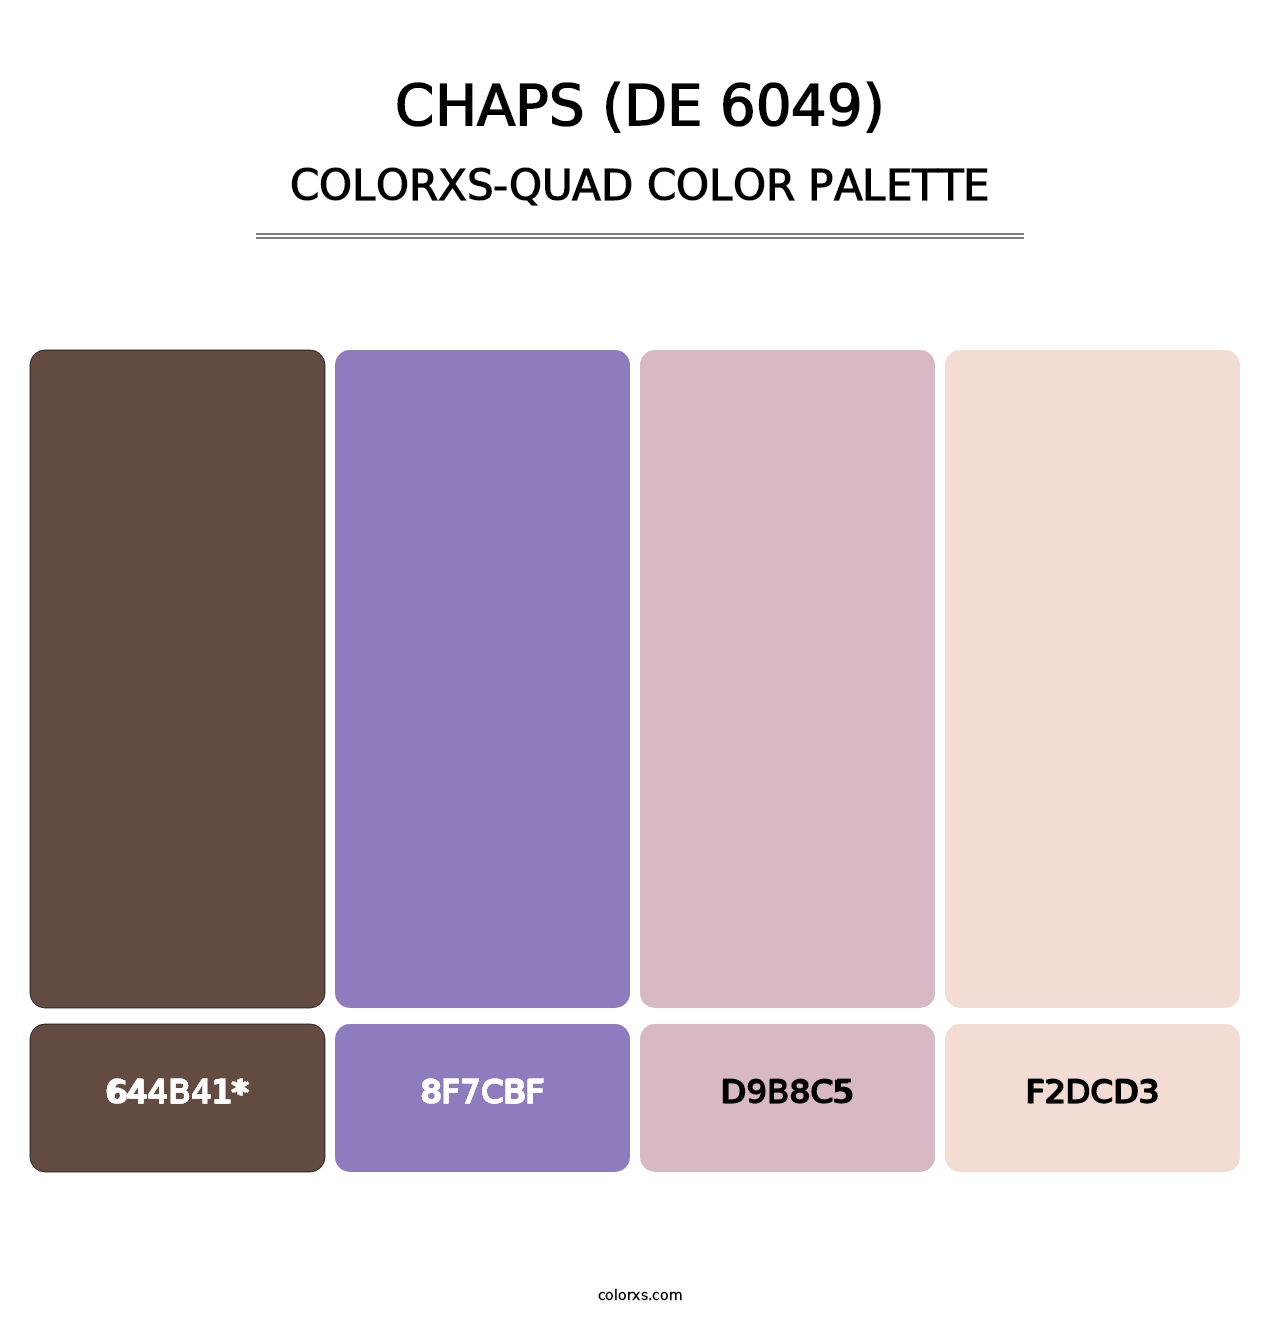 Chaps (DE 6049) - Colorxs Quad Palette